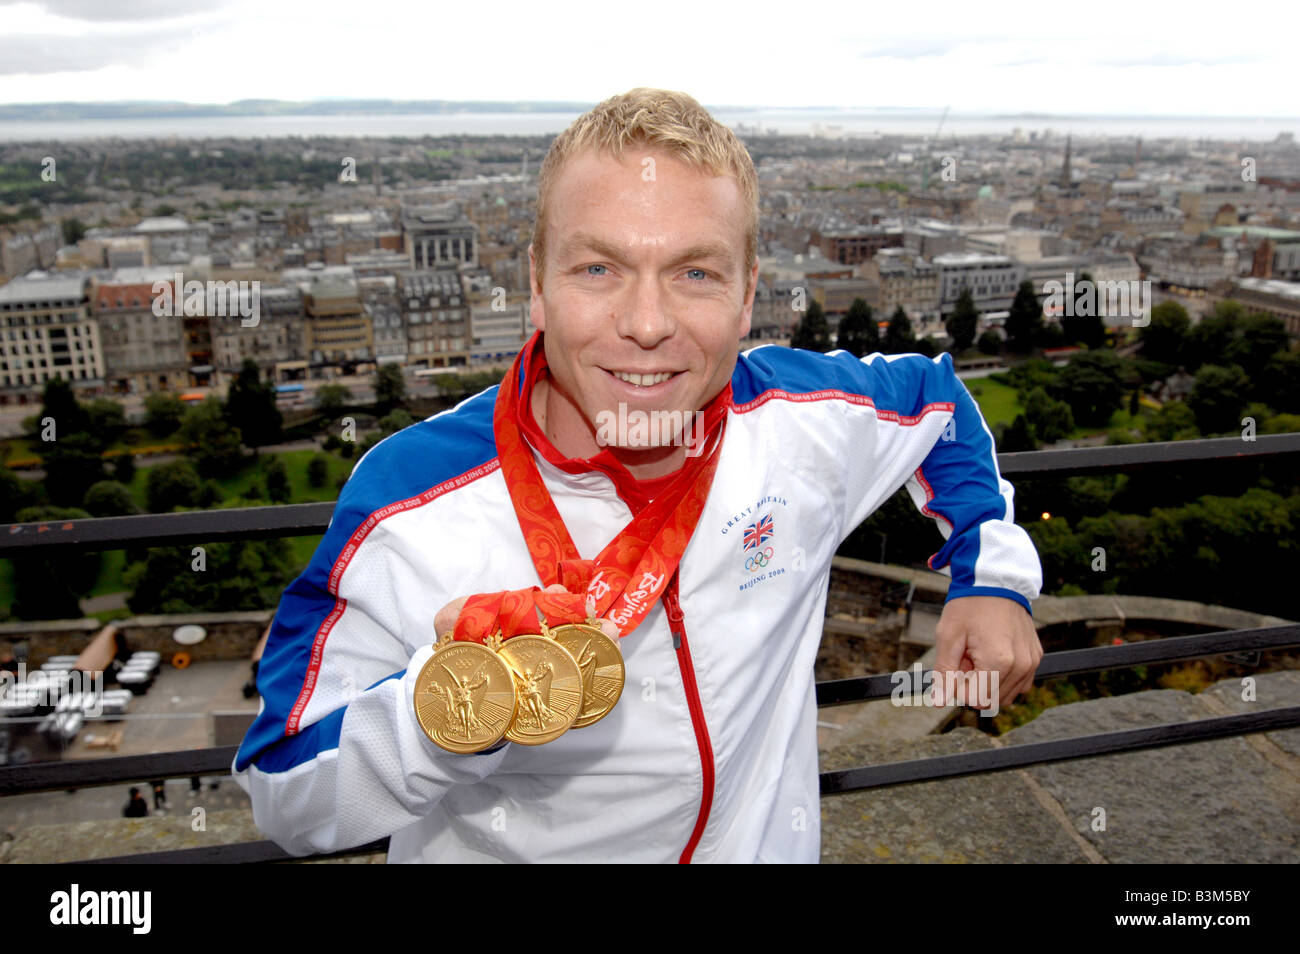 Triple Gold gagner cycliste olympique Chris Hoy dans sa ville d'Édimbourg, juste après les Jeux de Pékin Banque D'Images